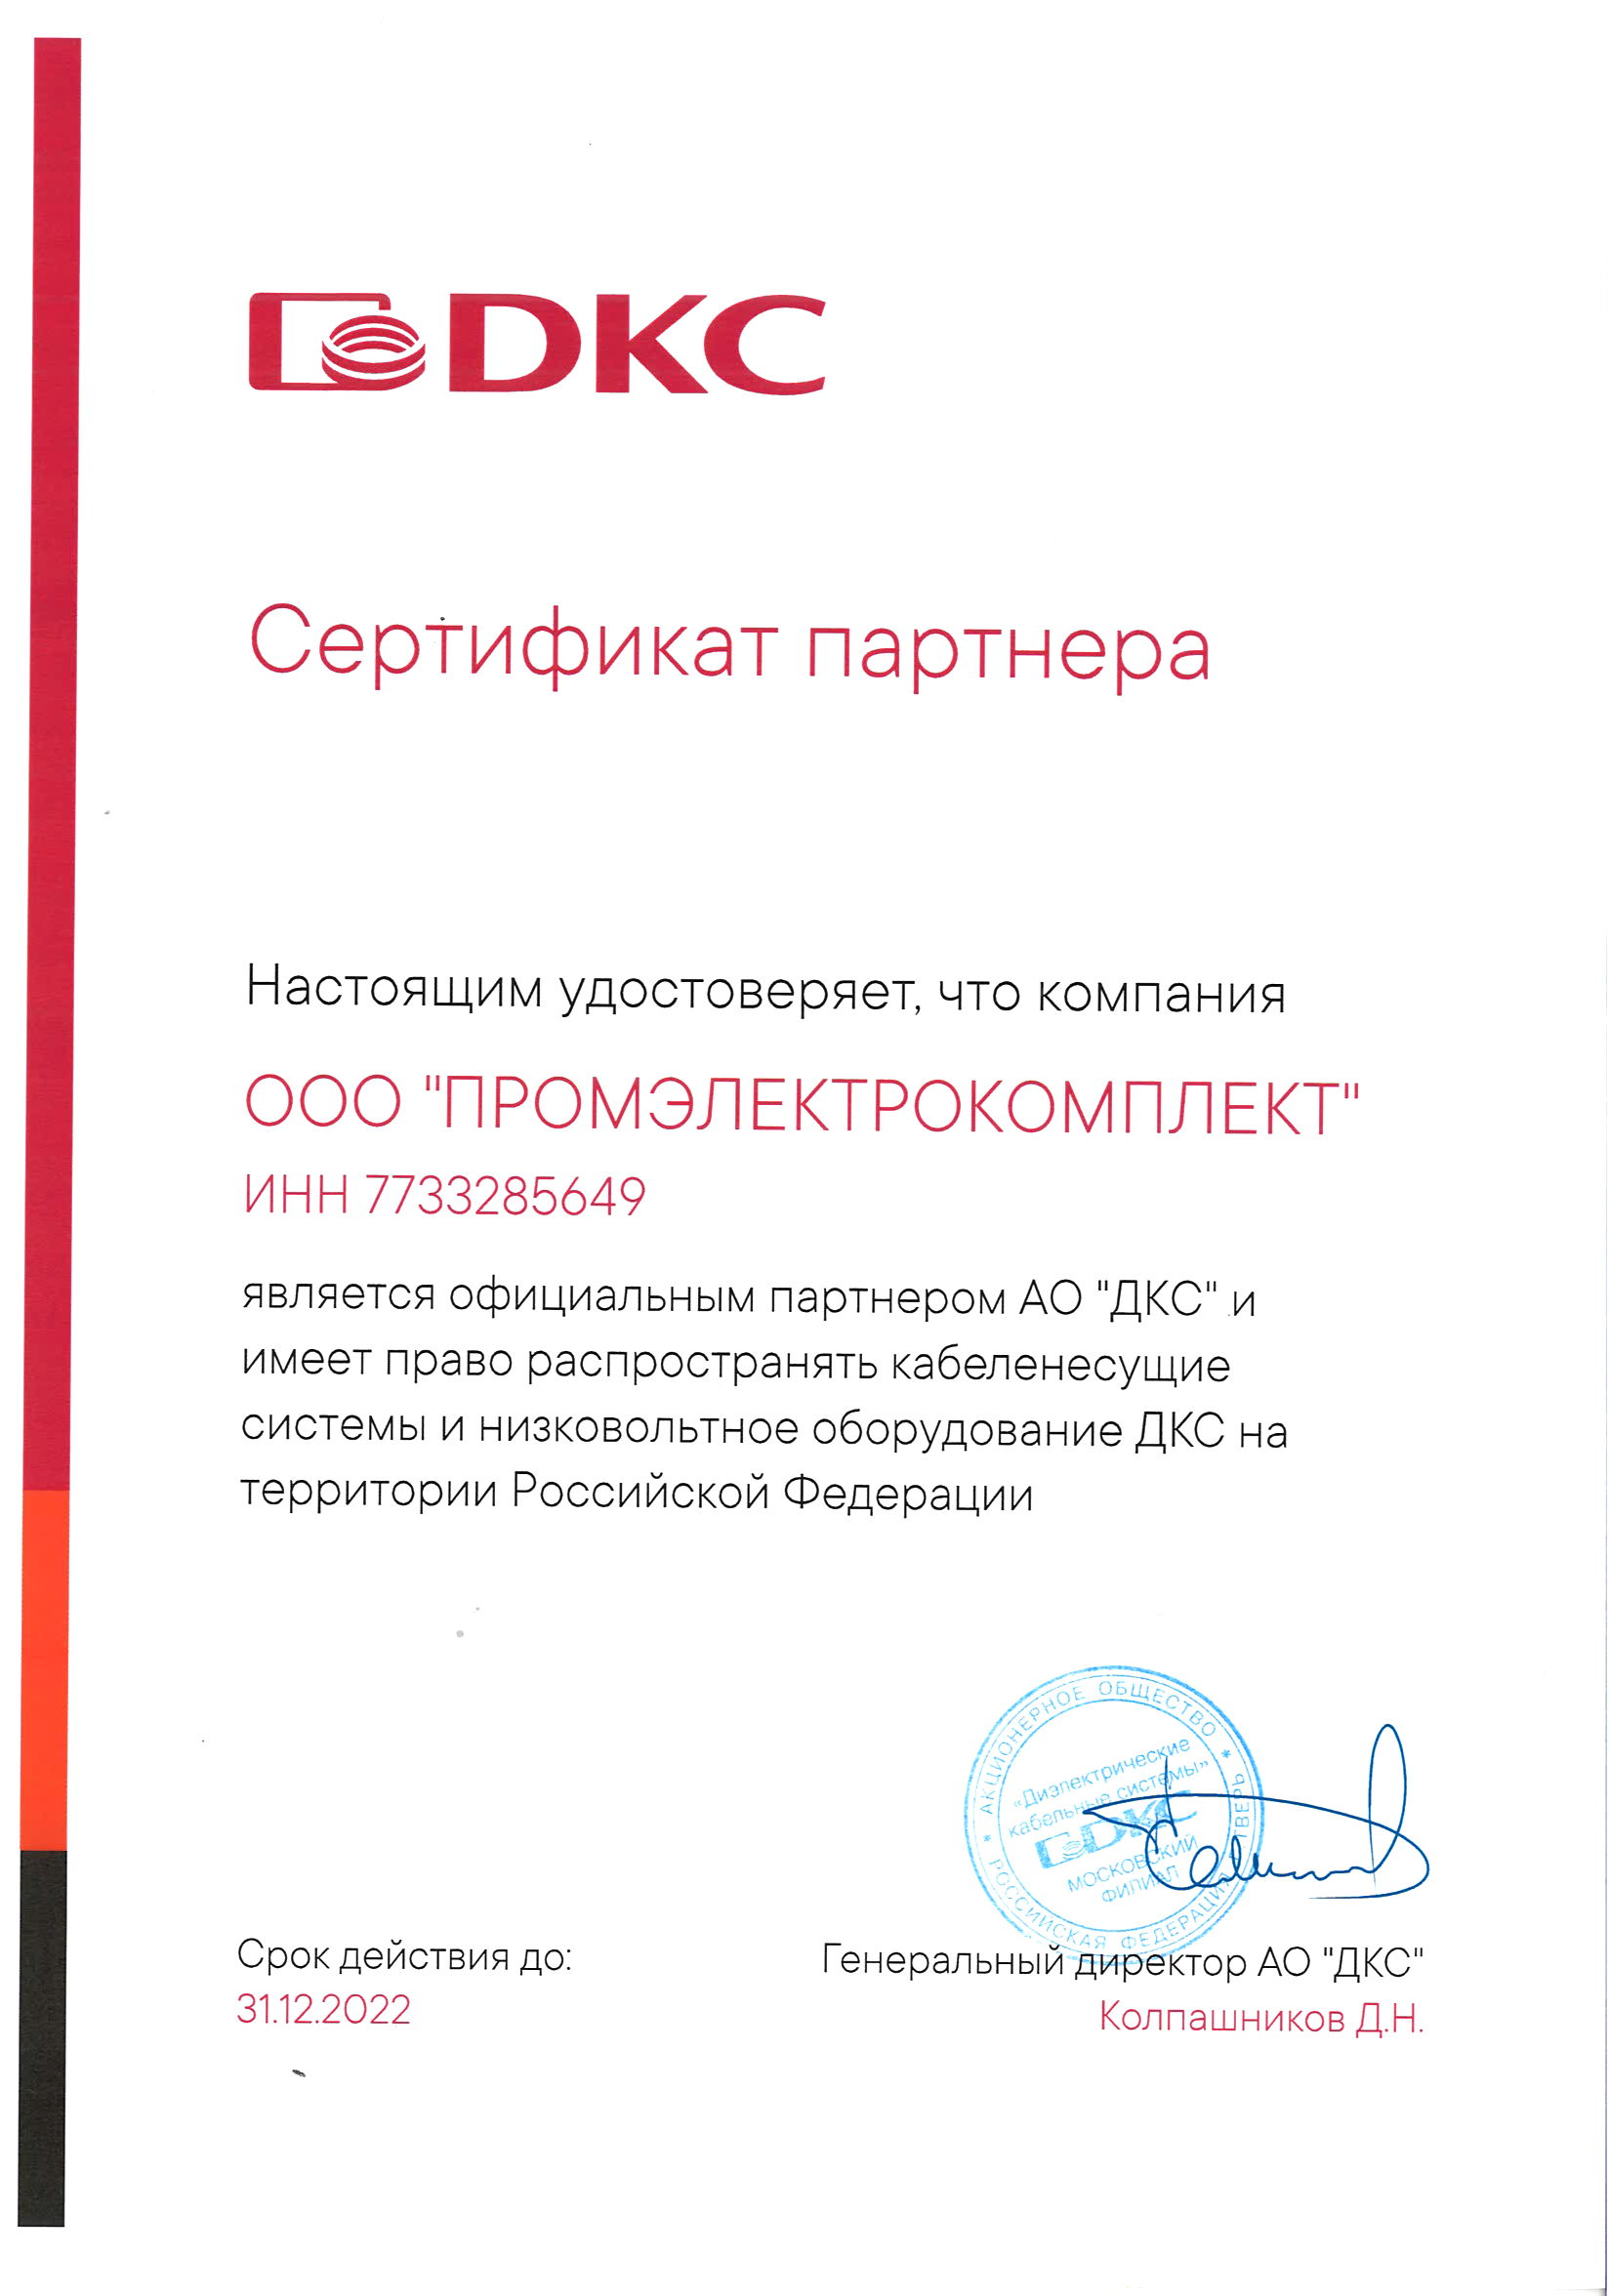 Сертификат партнера DKC